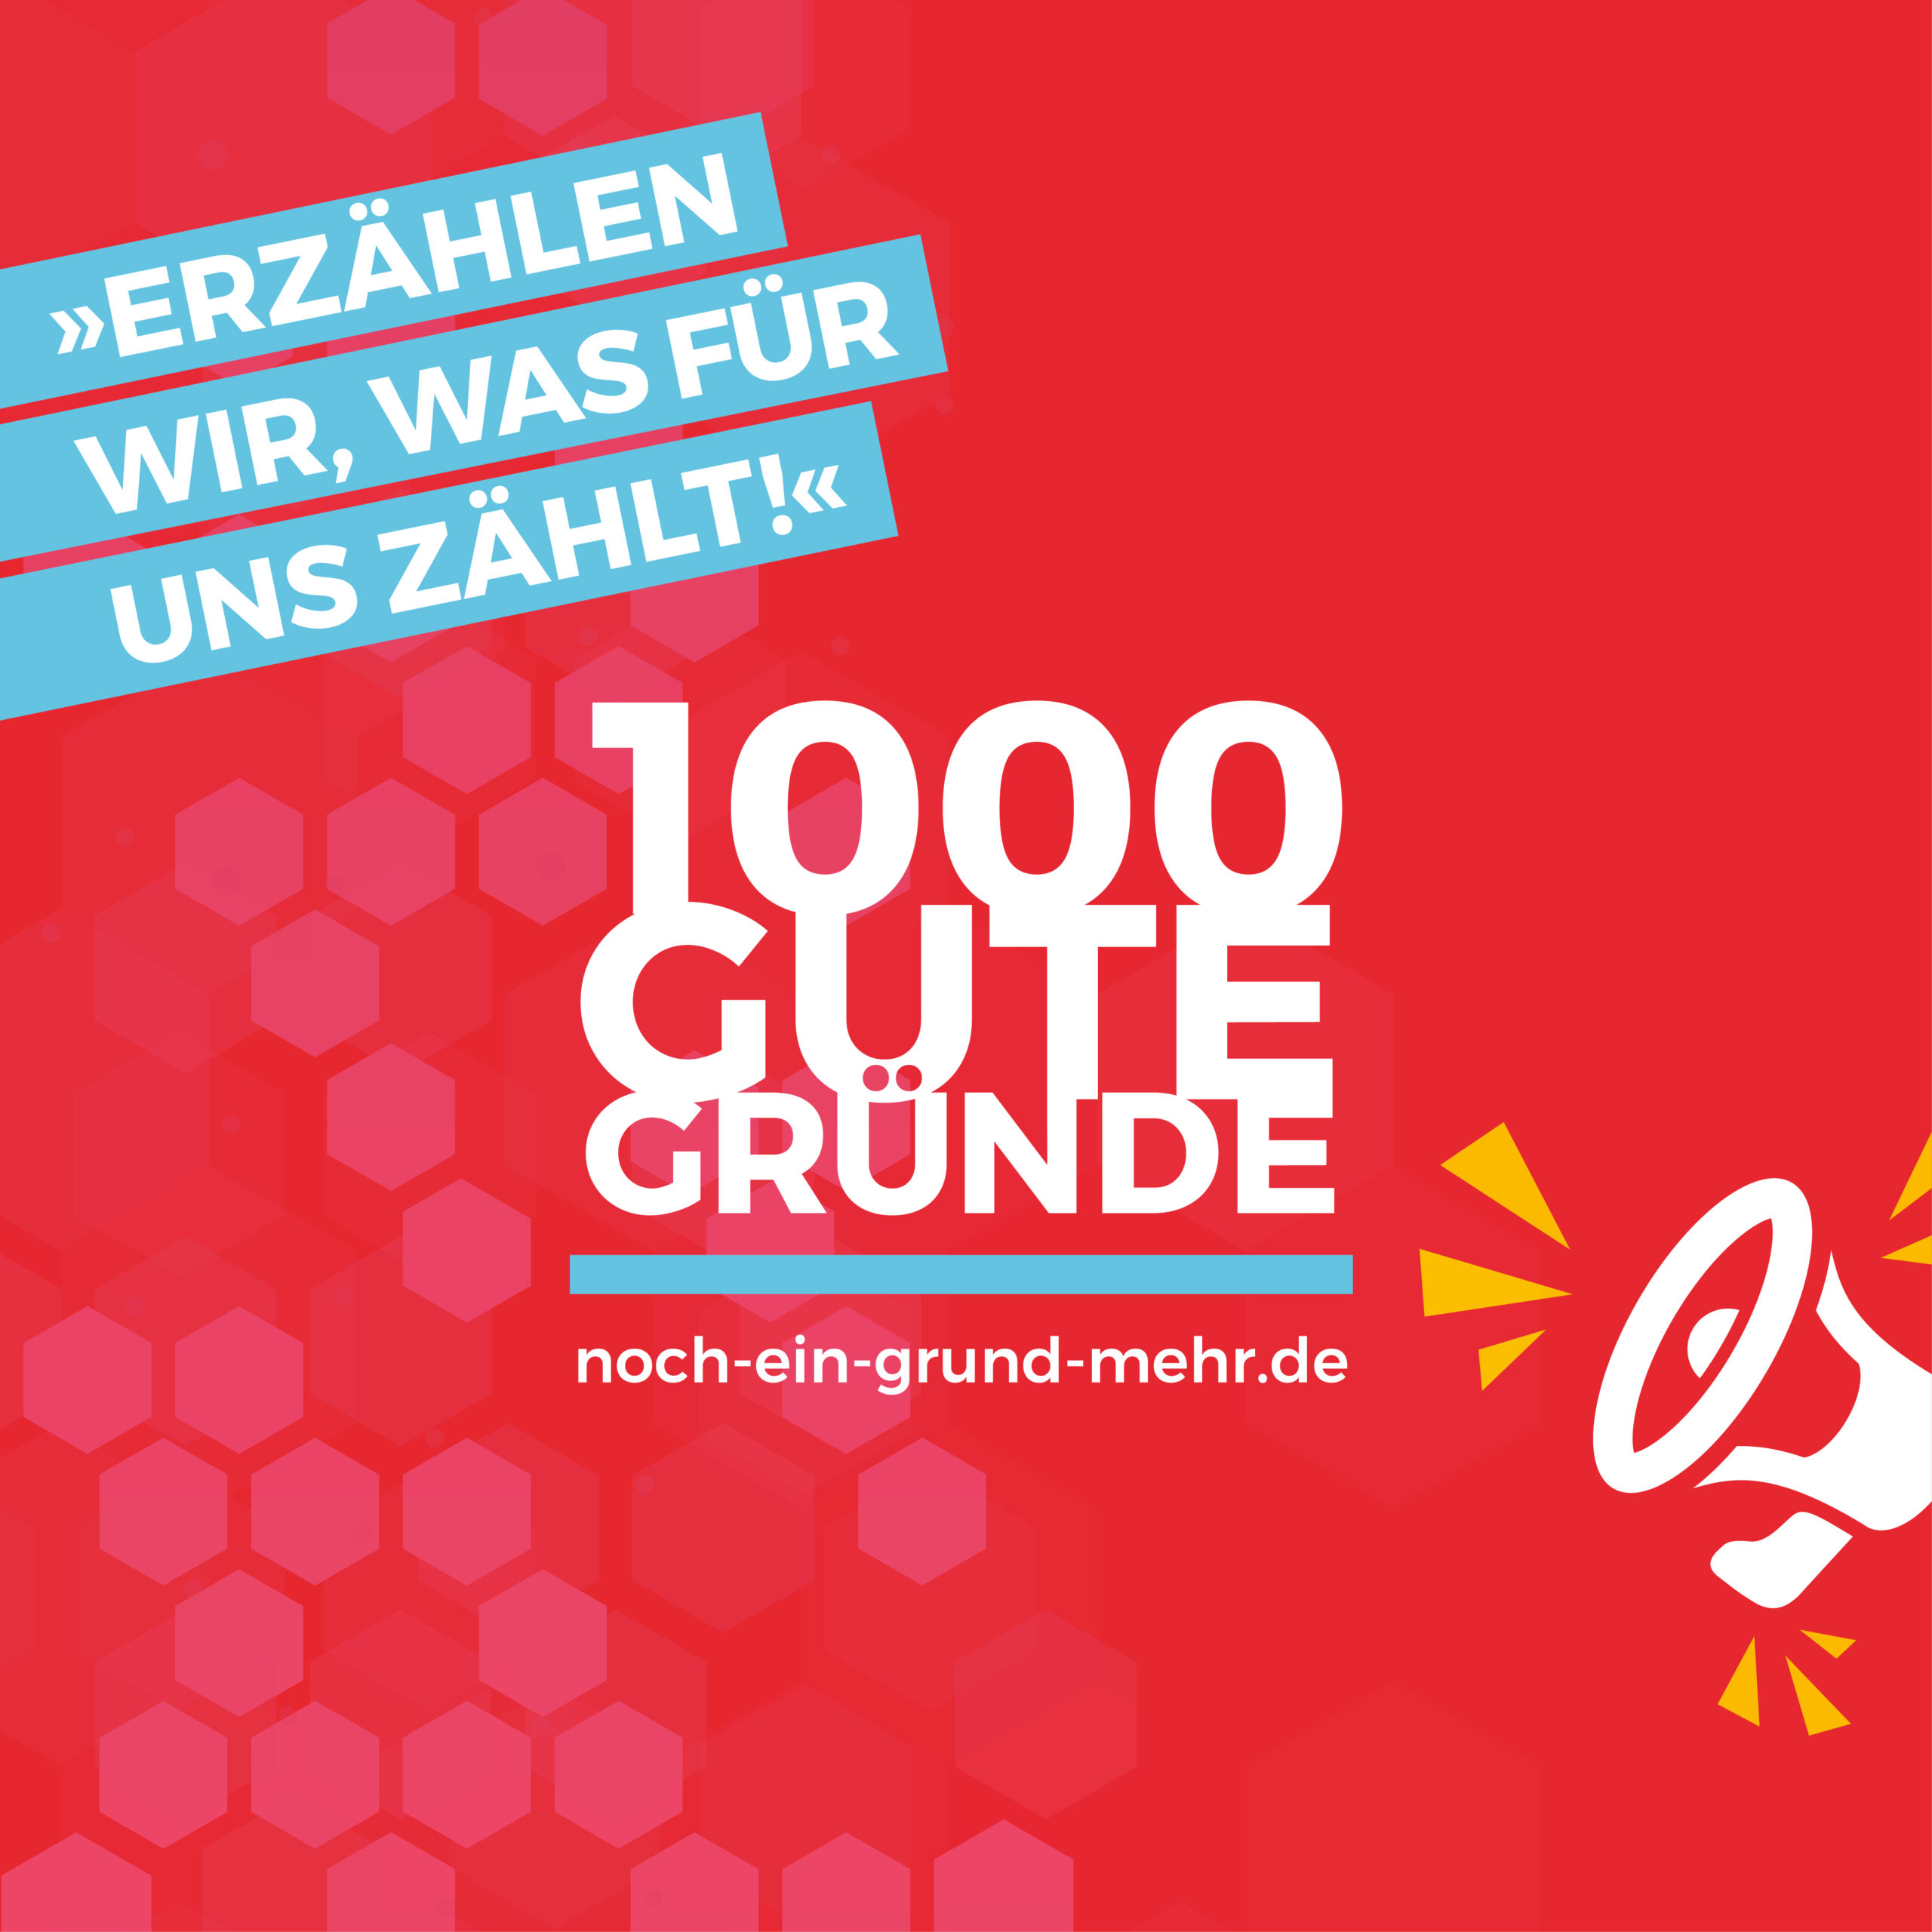 Die neue Glaubens-Initiative des Erzbistums Paderborn: 1000 gute Gründe. Mehr Informationen auf noch-ein-grund-mehr.de